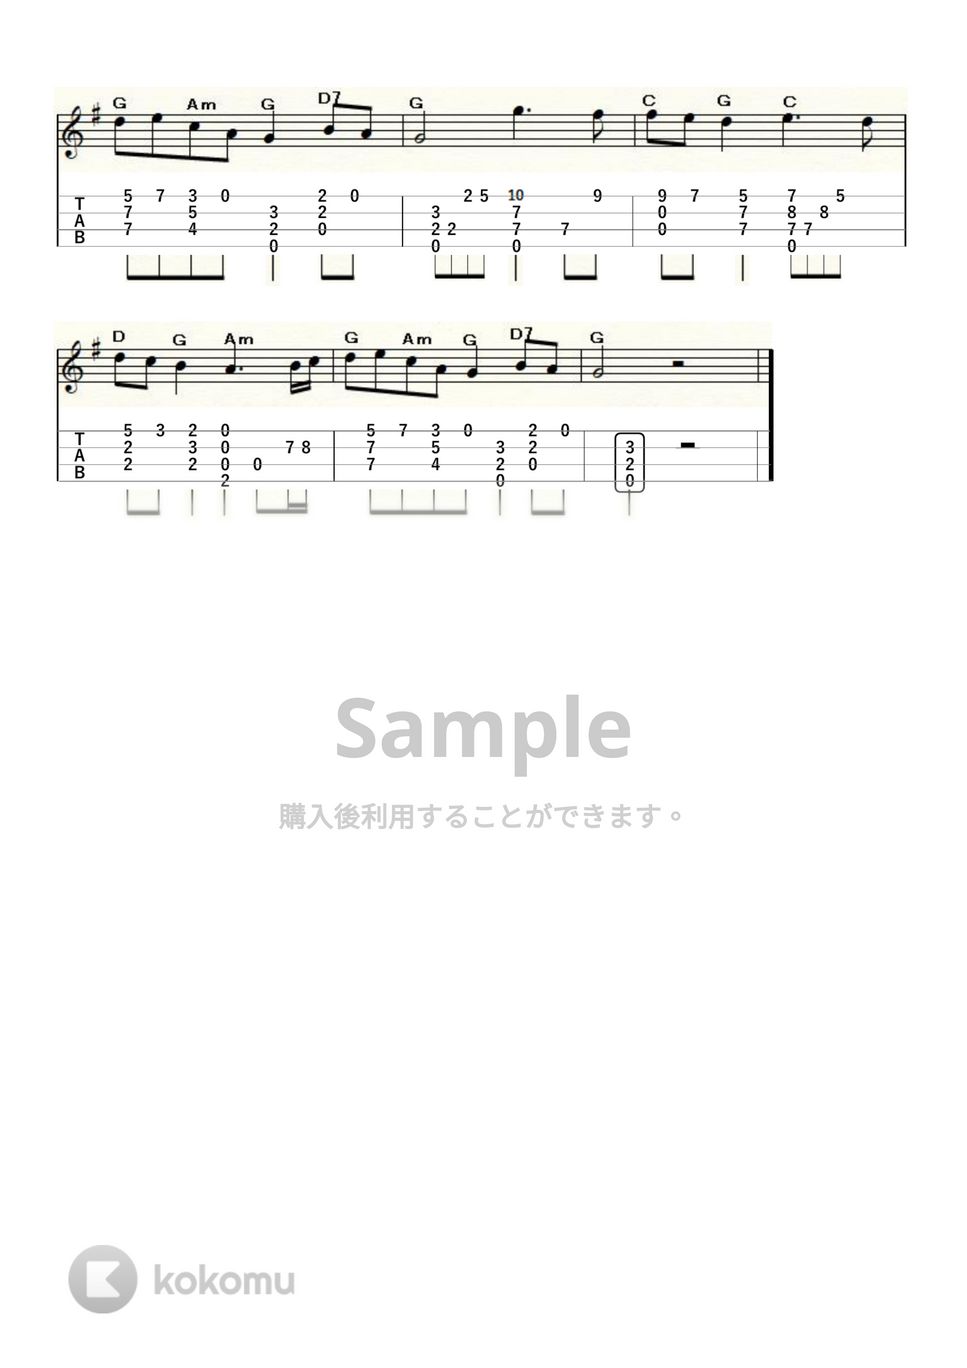 ハイドン - ハイドン弦楽四重奏曲77番「皇帝」第2楽章～ドイツ国歌～ (ｳｸﾚﾚｿﾛ / High-G・Low-G / 中級) by ukulelepapa